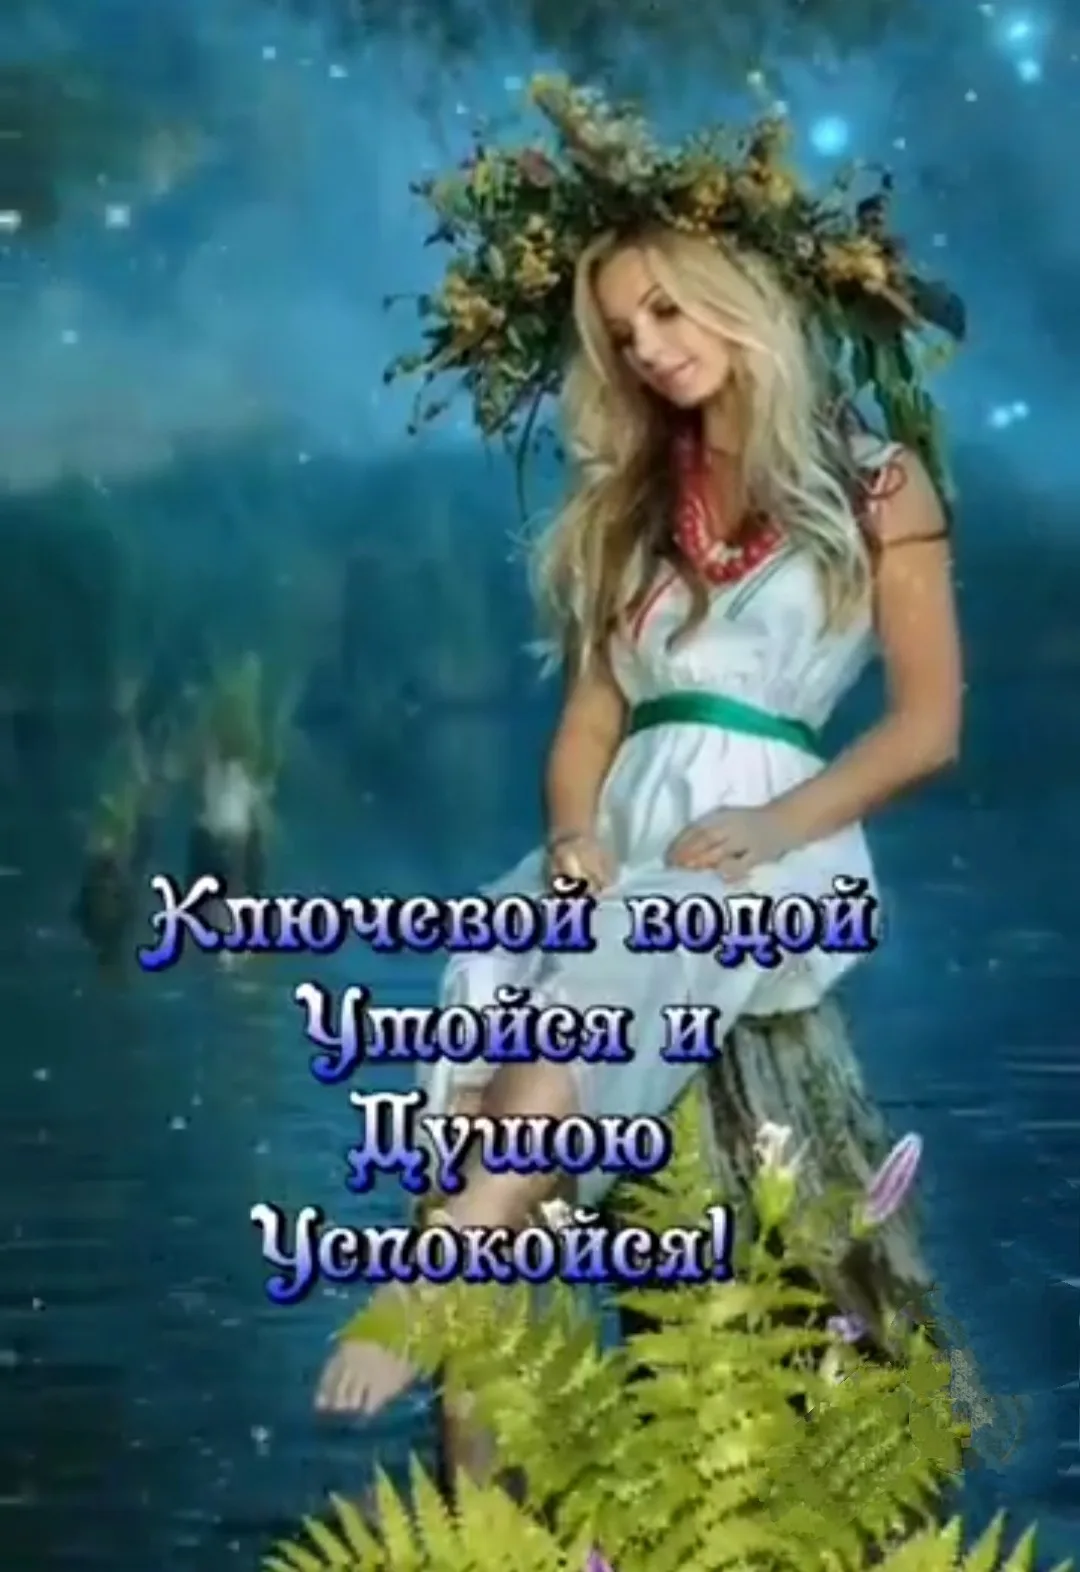 Фото Привітання з Івана купала на українській мові #56